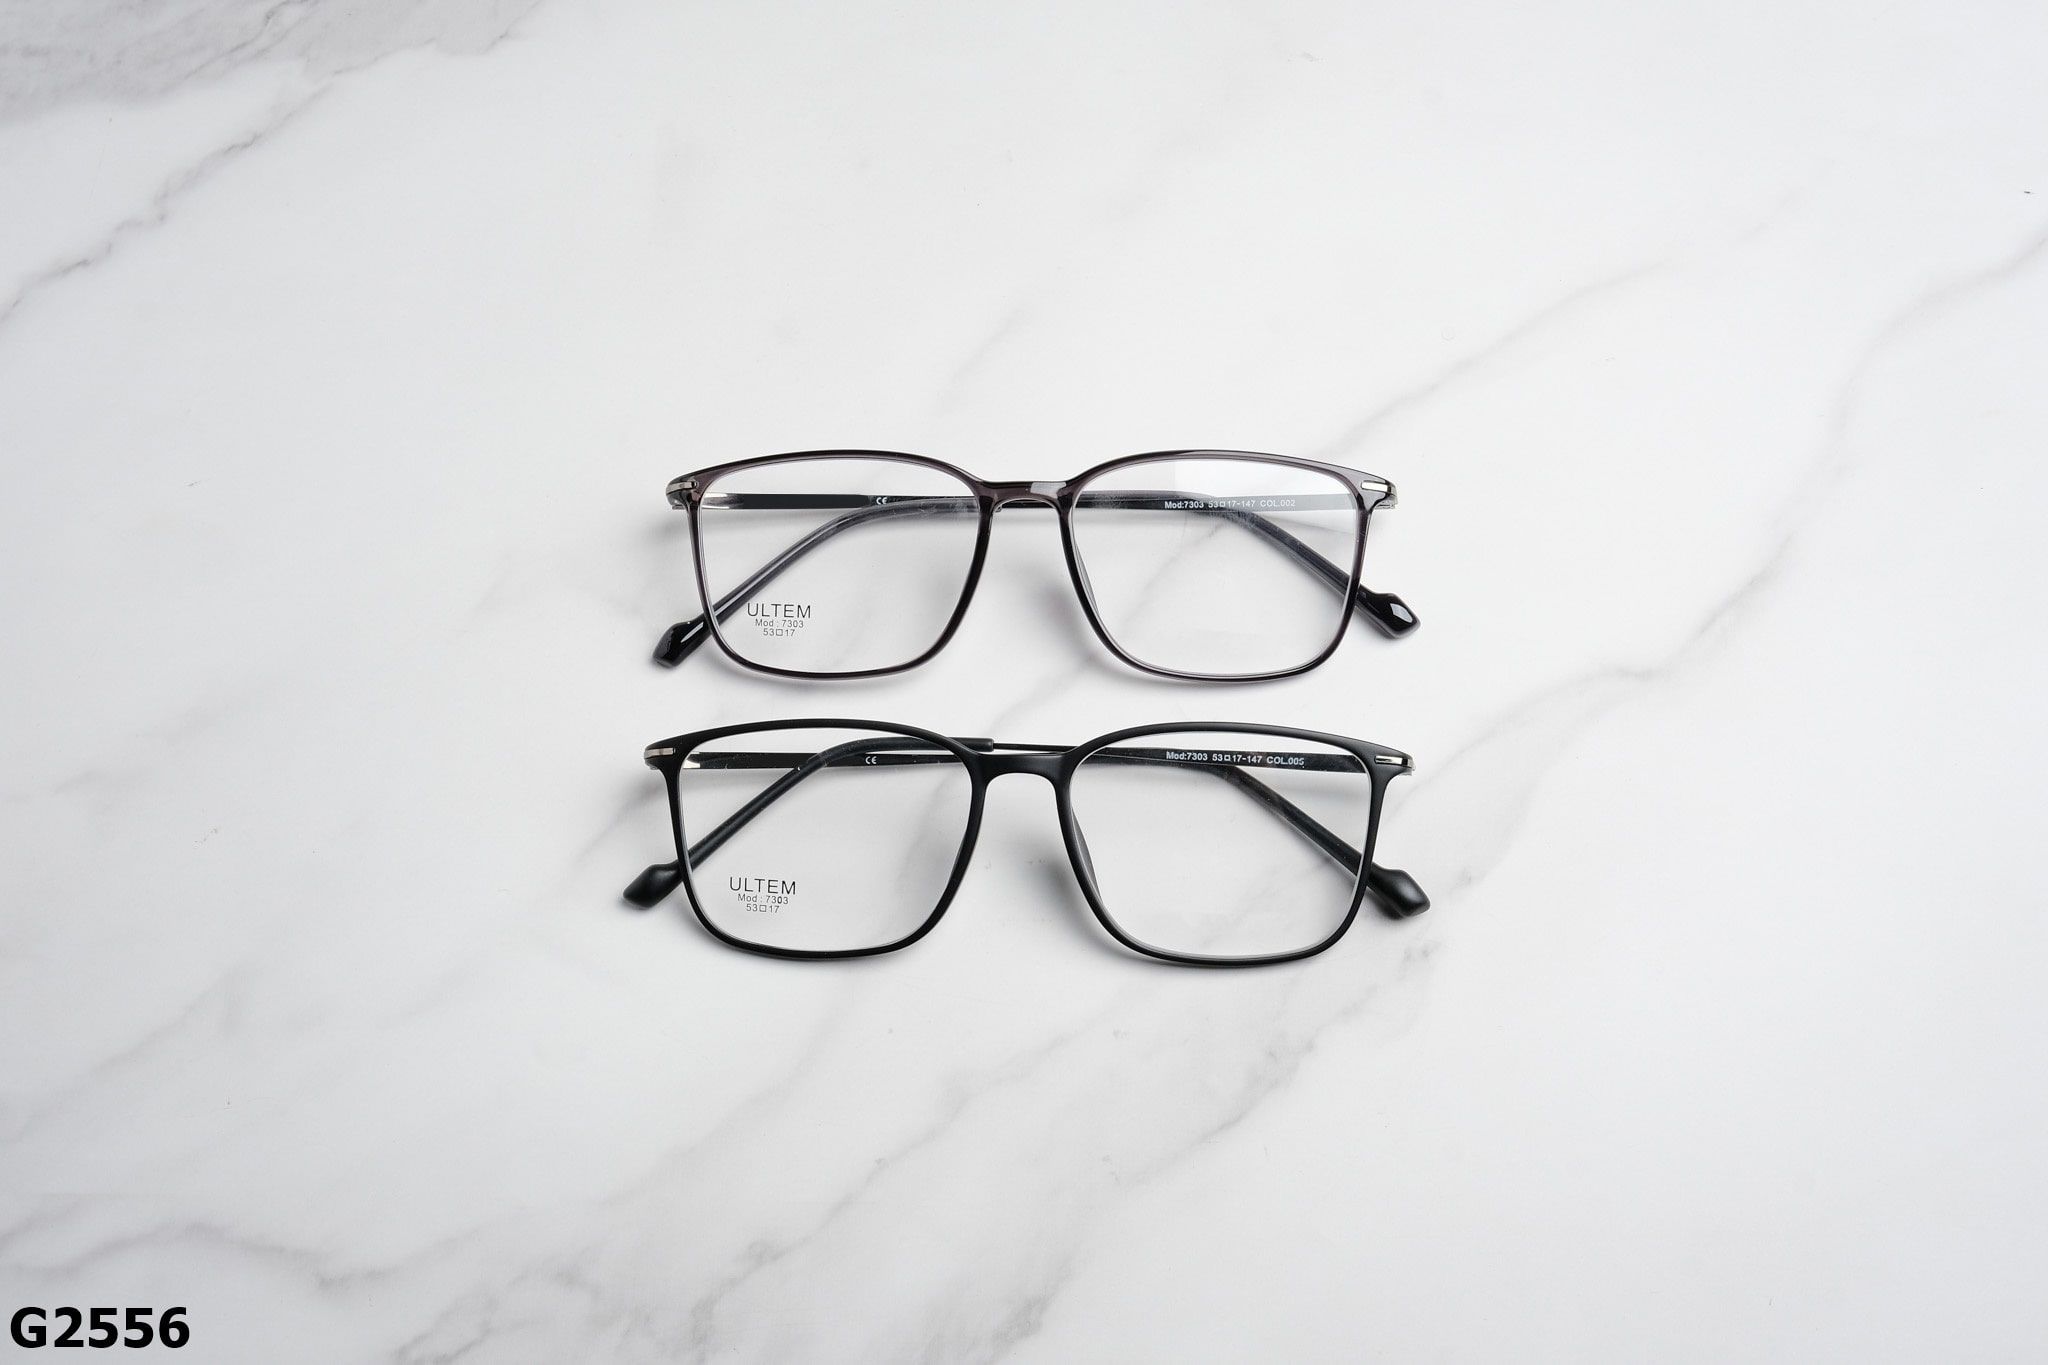  Rex-ton Eyewear - Glasses - G2556 